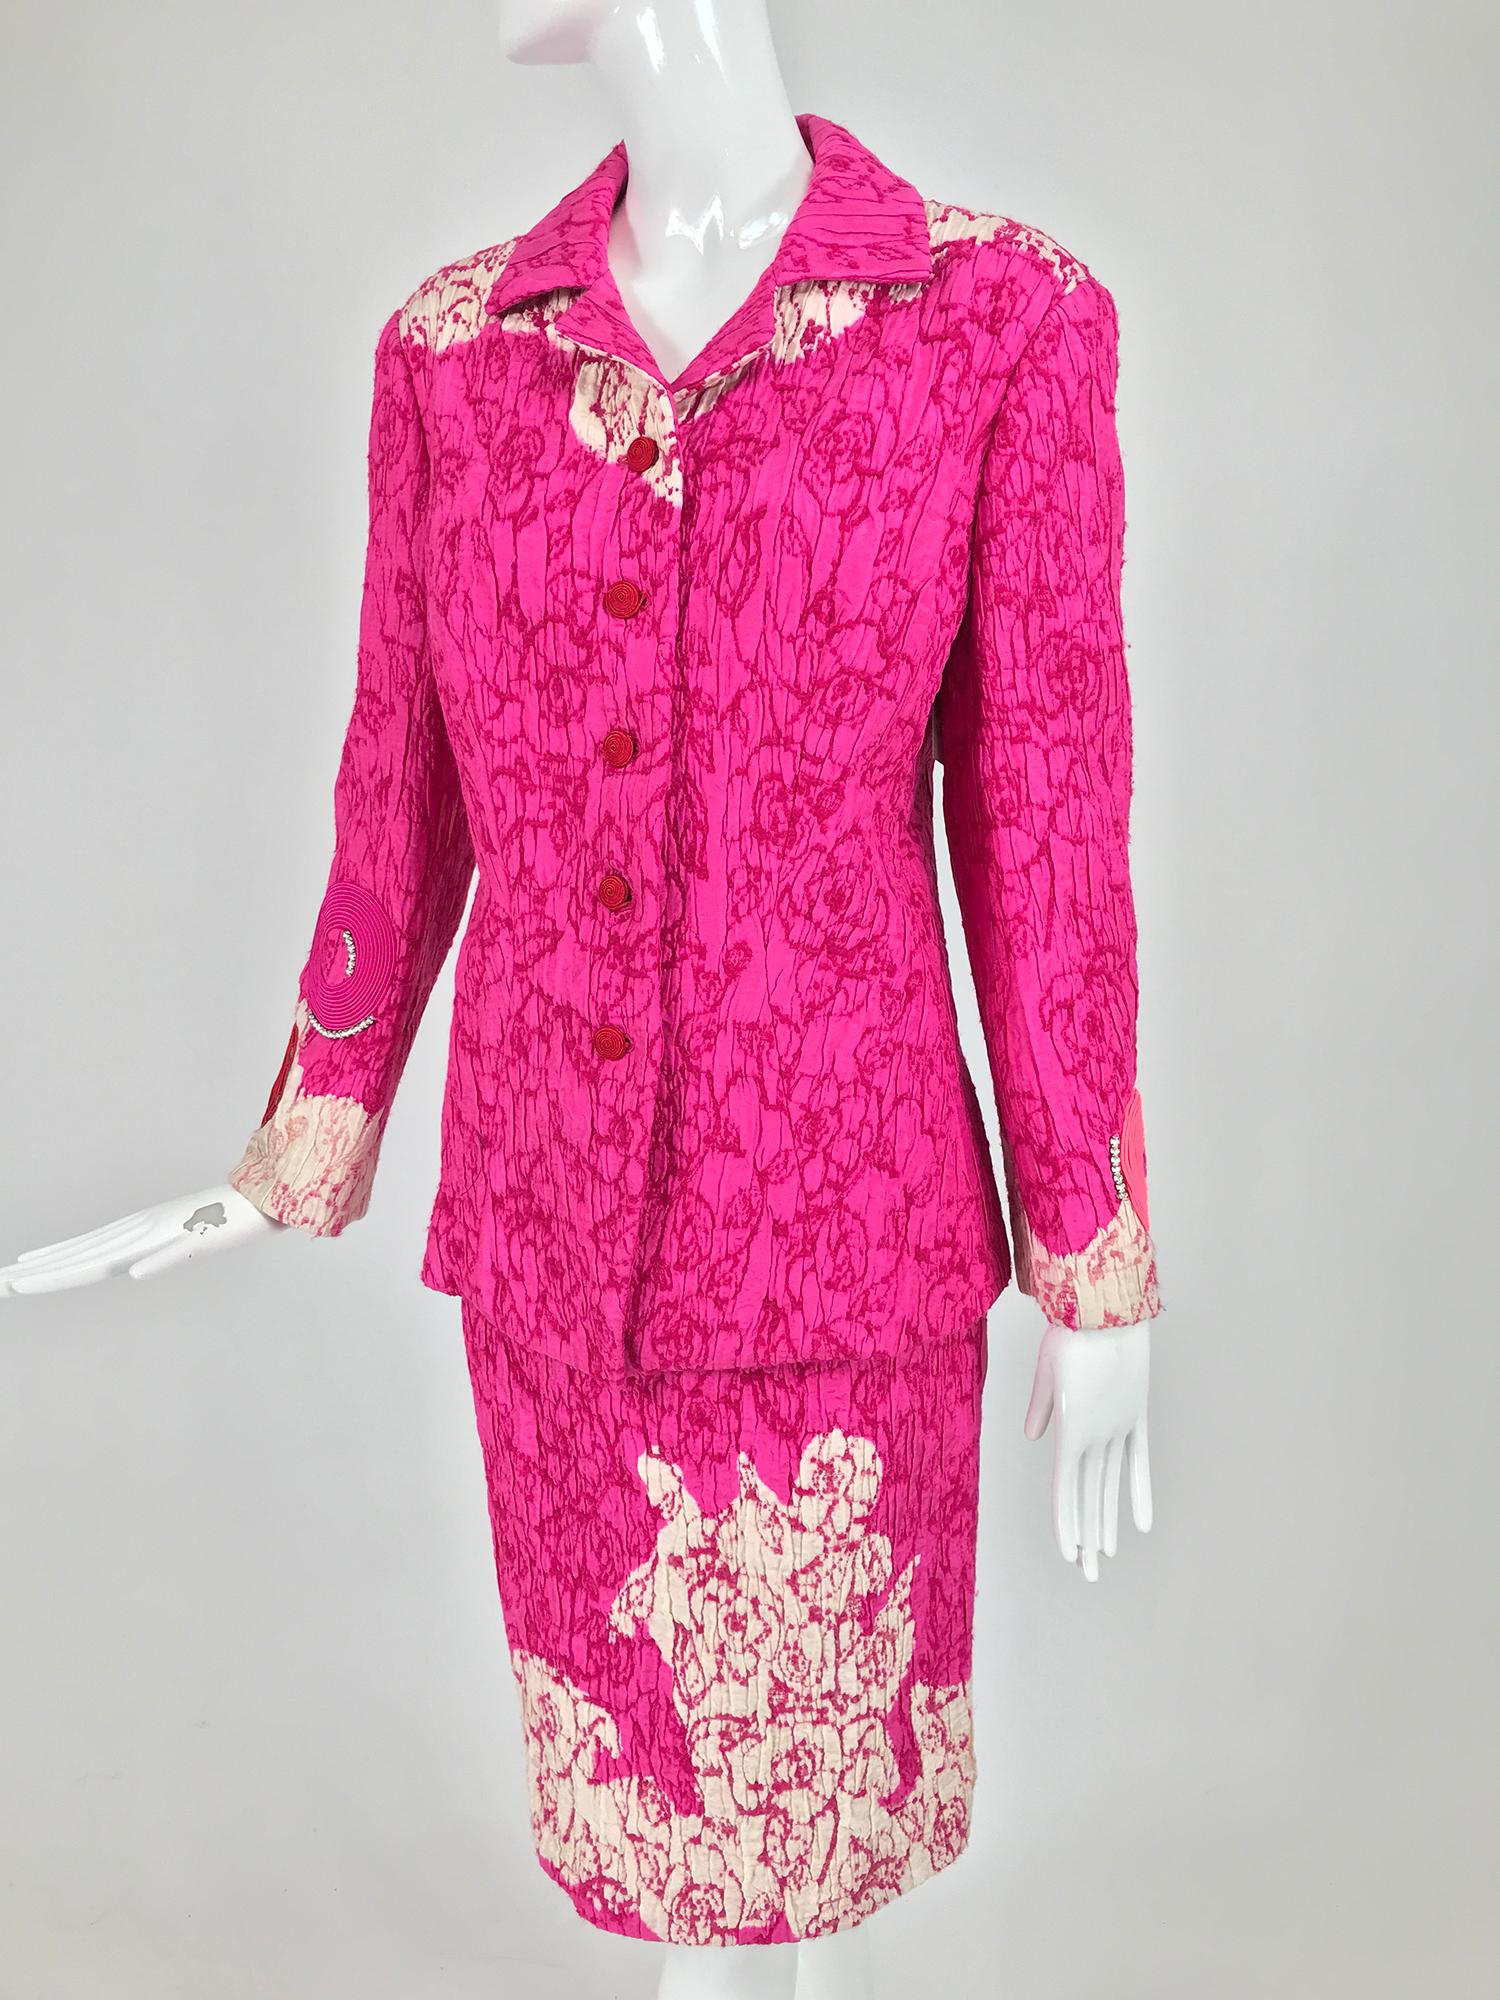 Combinaison jupe brodée en soie rose vif et blanc cassé de Christian Lacroix, datant des années 1990. La veste se ferme sur le devant avec des boutons circulaires en corde, les manches sont appliquées aux poignets avec des cercles en corde, l'un